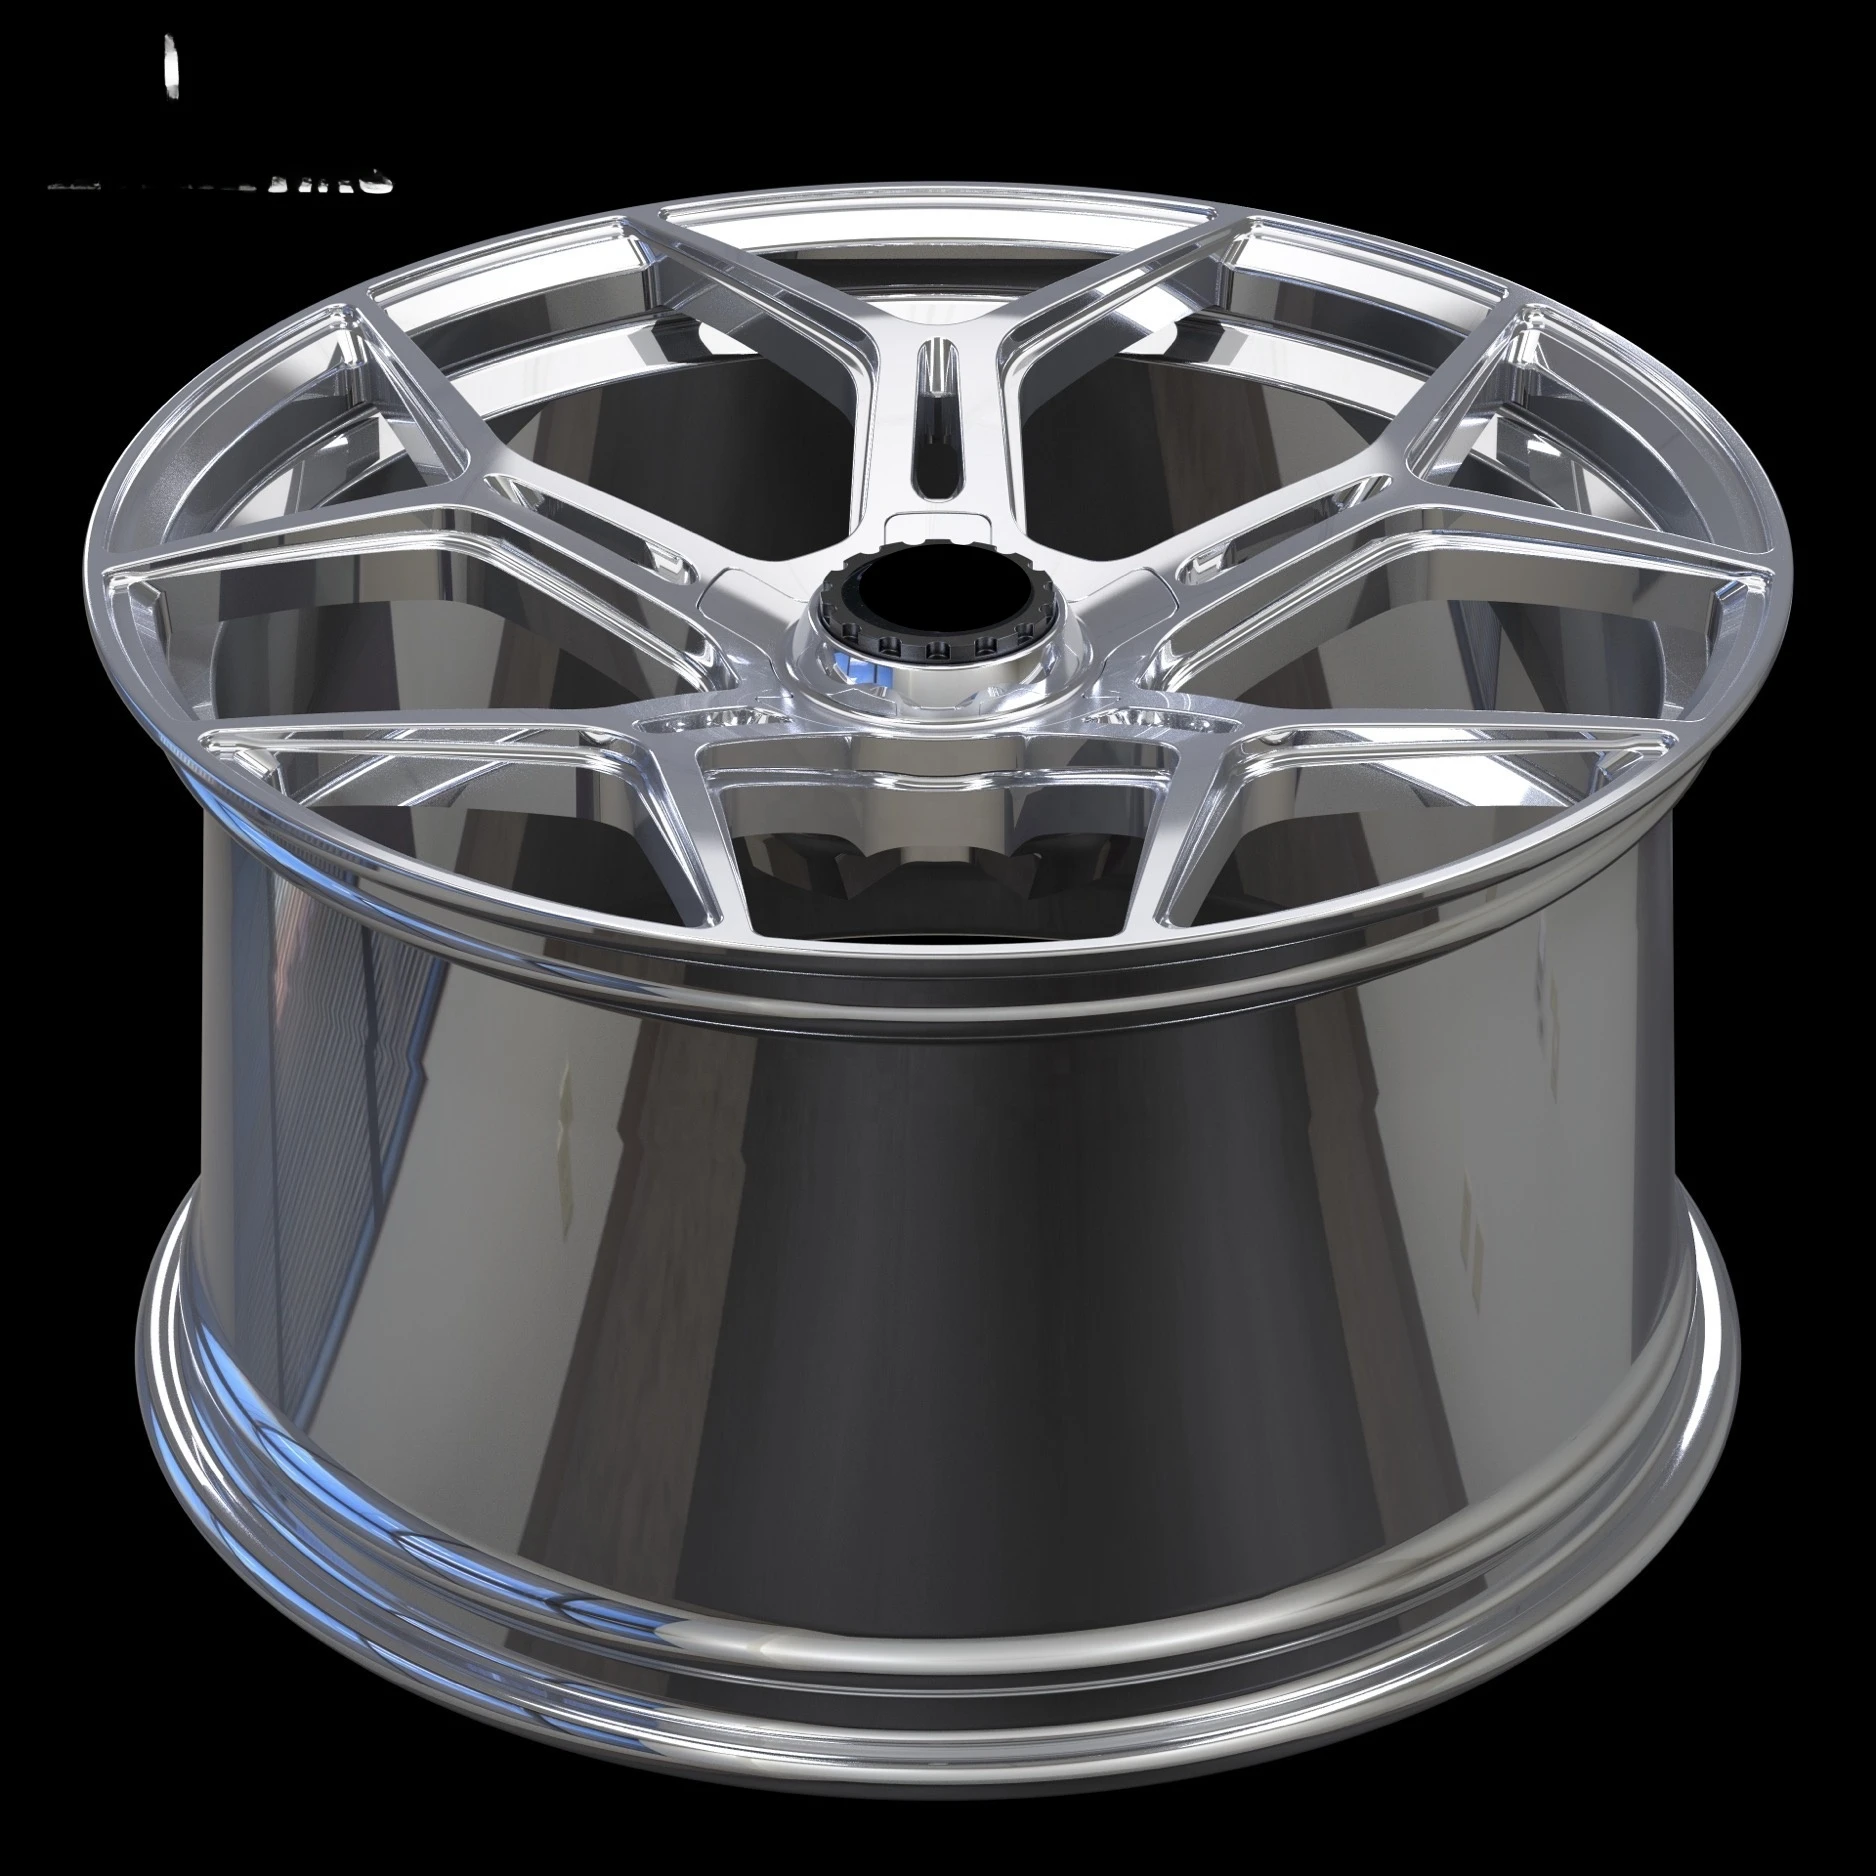 Bku racing пассажирские диски carl диски Porsche 20 дюймовые диски 5x130 с 5 отверстиями хромированная краска подходит для 911 992 997.1 997.2 718 Targa Изображение 2